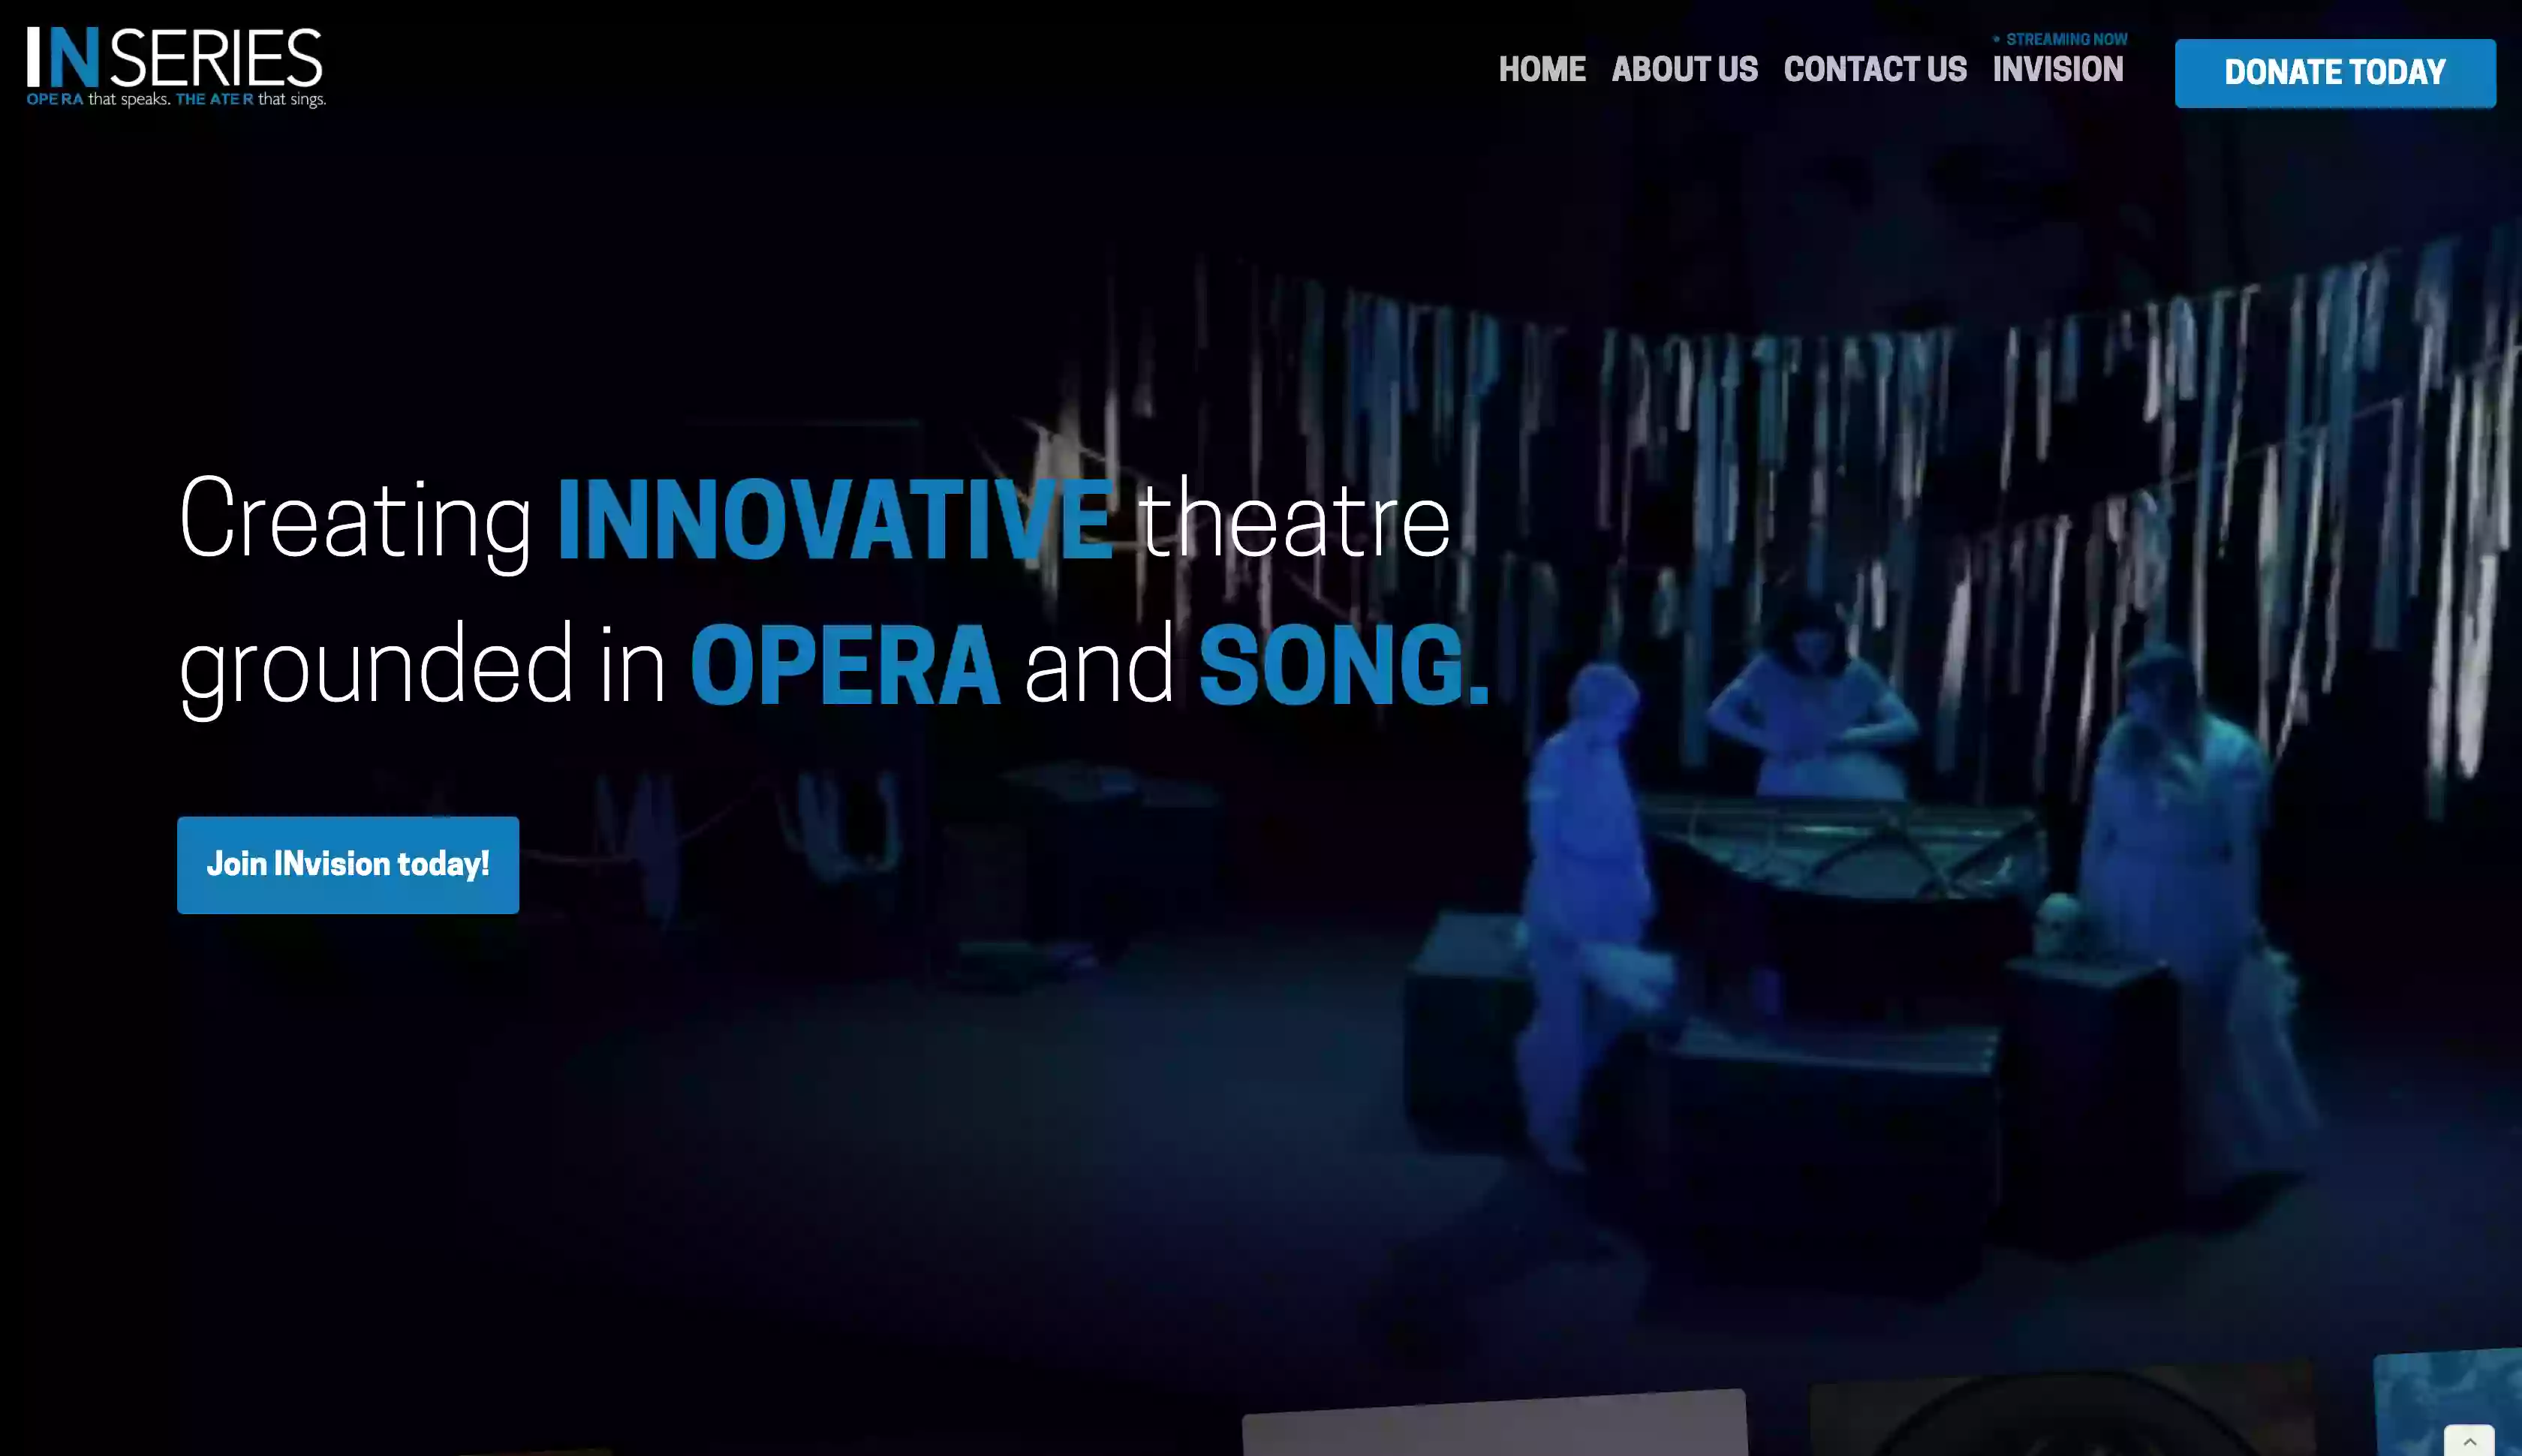 IN Series: Opera that speaks. Theater that sings.